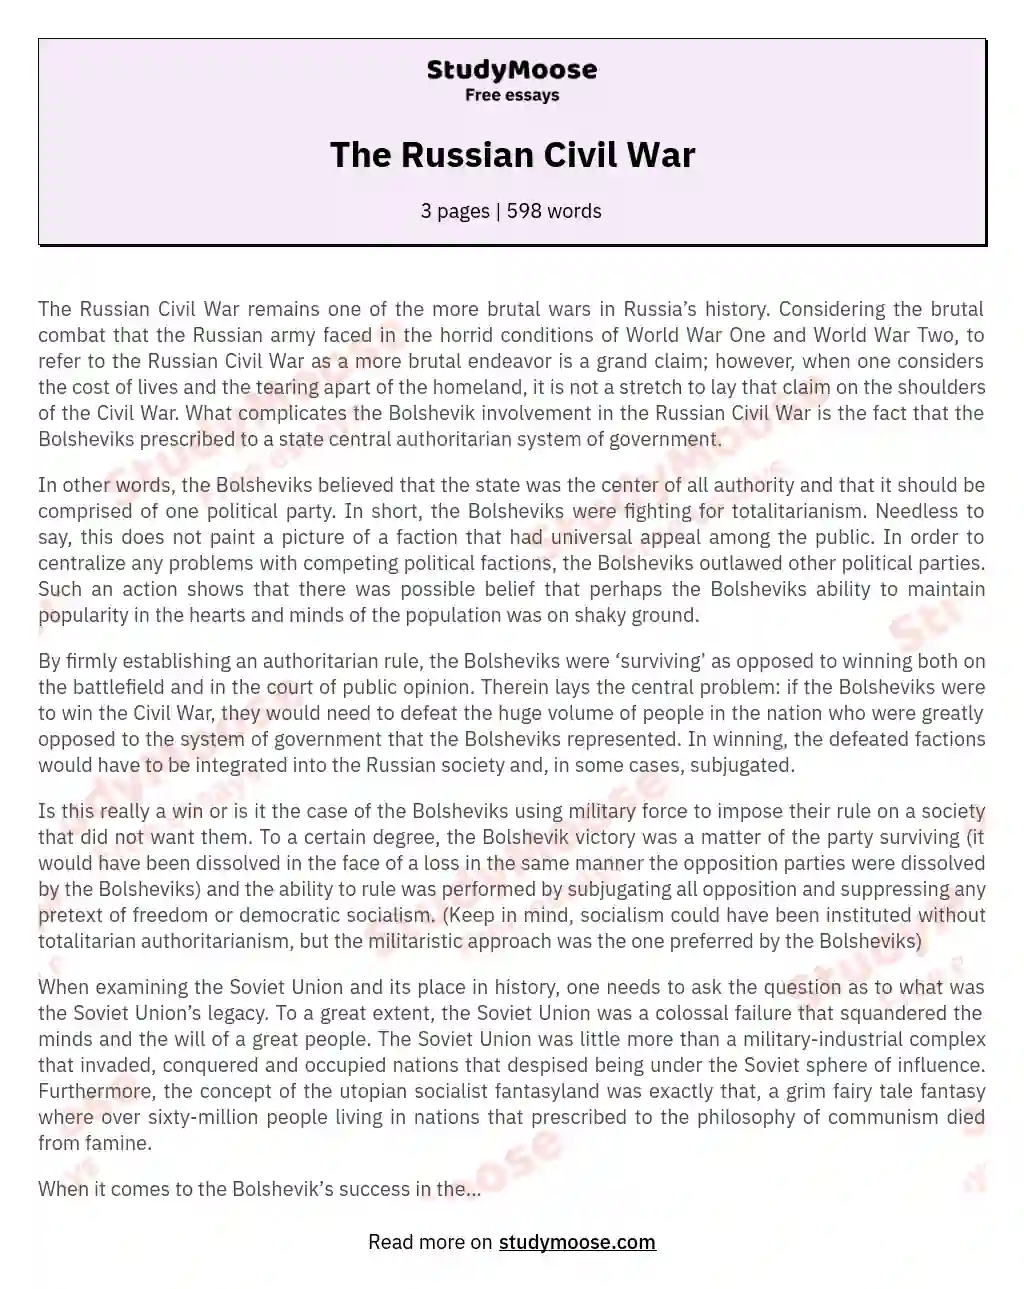 The Russian Civil War essay